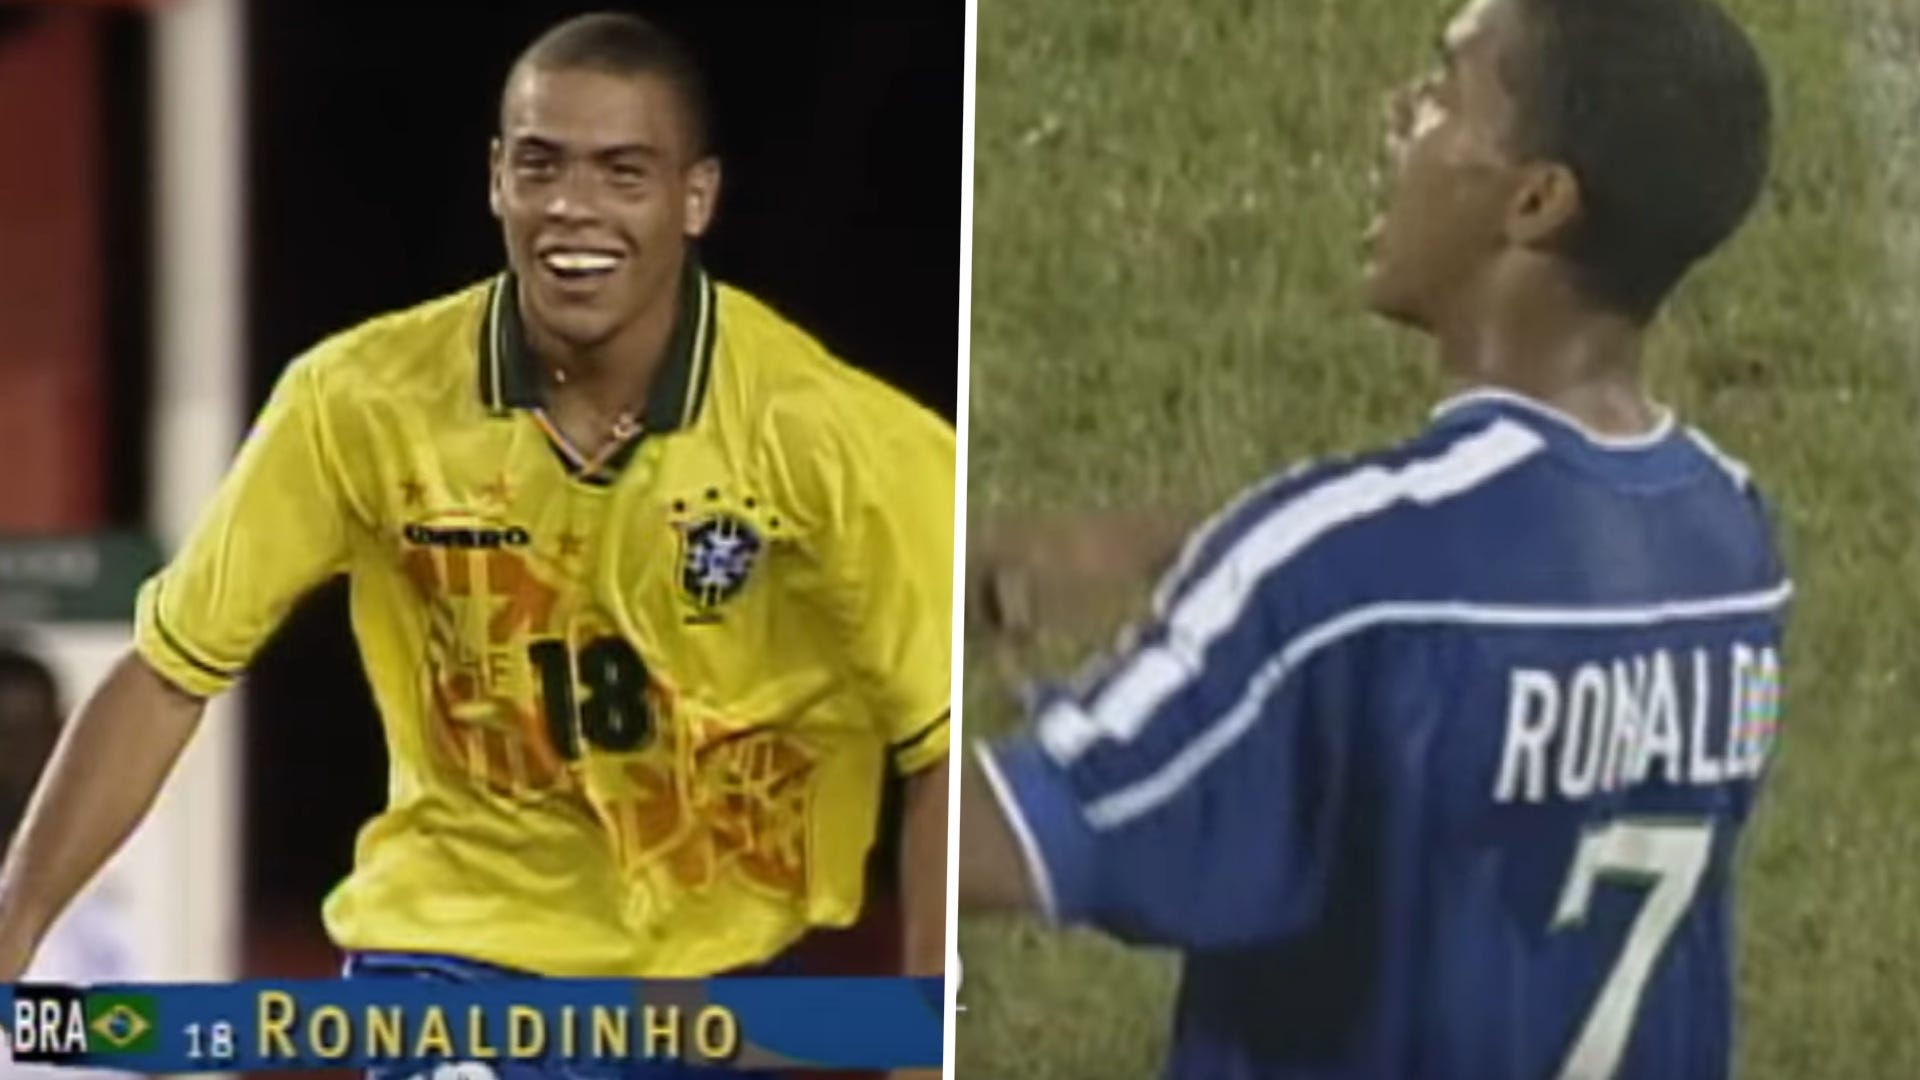 Ronaldinho Ronaldo